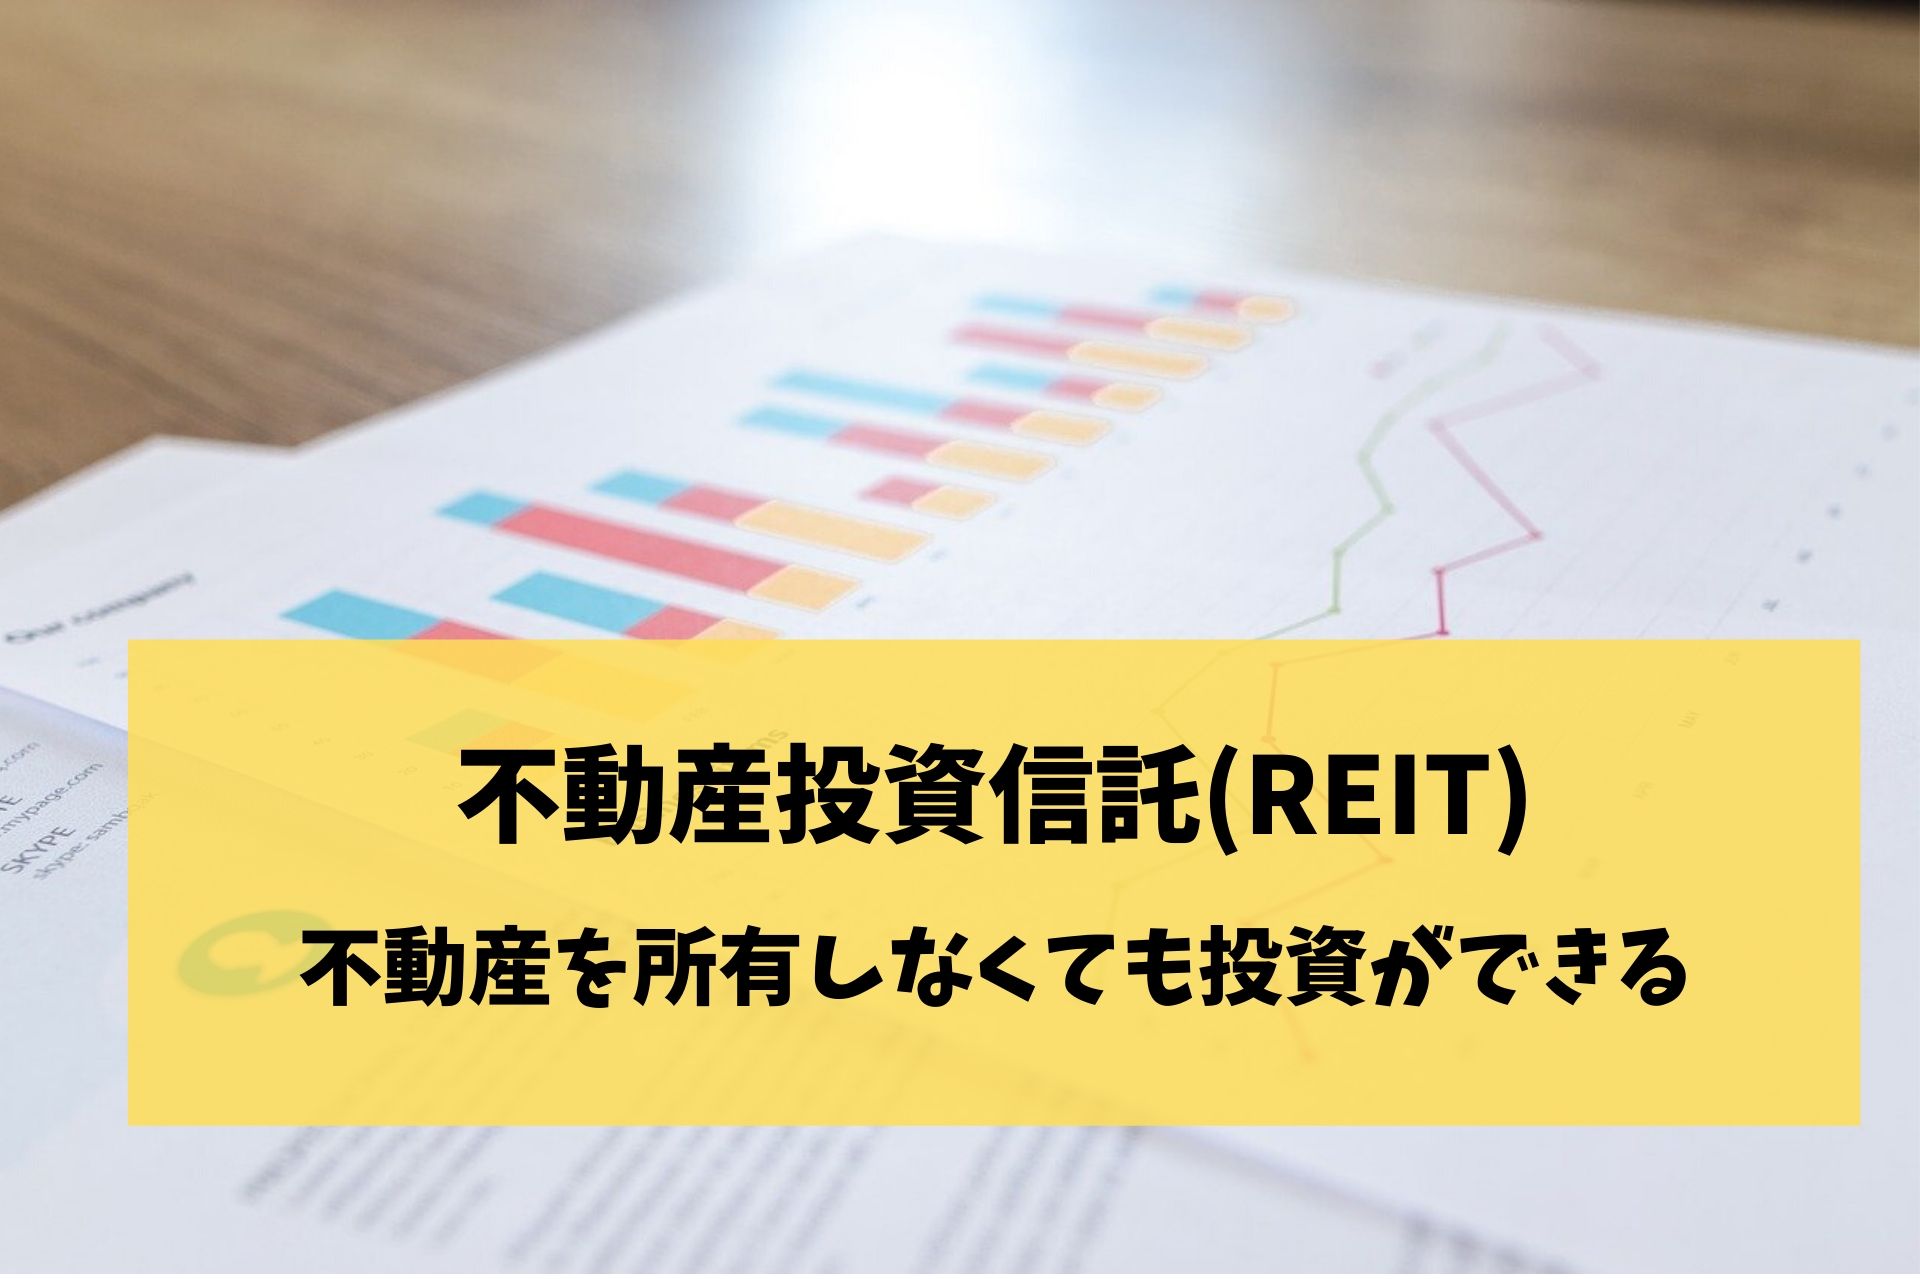 不動産を所有しなくても投資のできる不動産投資信託(REIT)